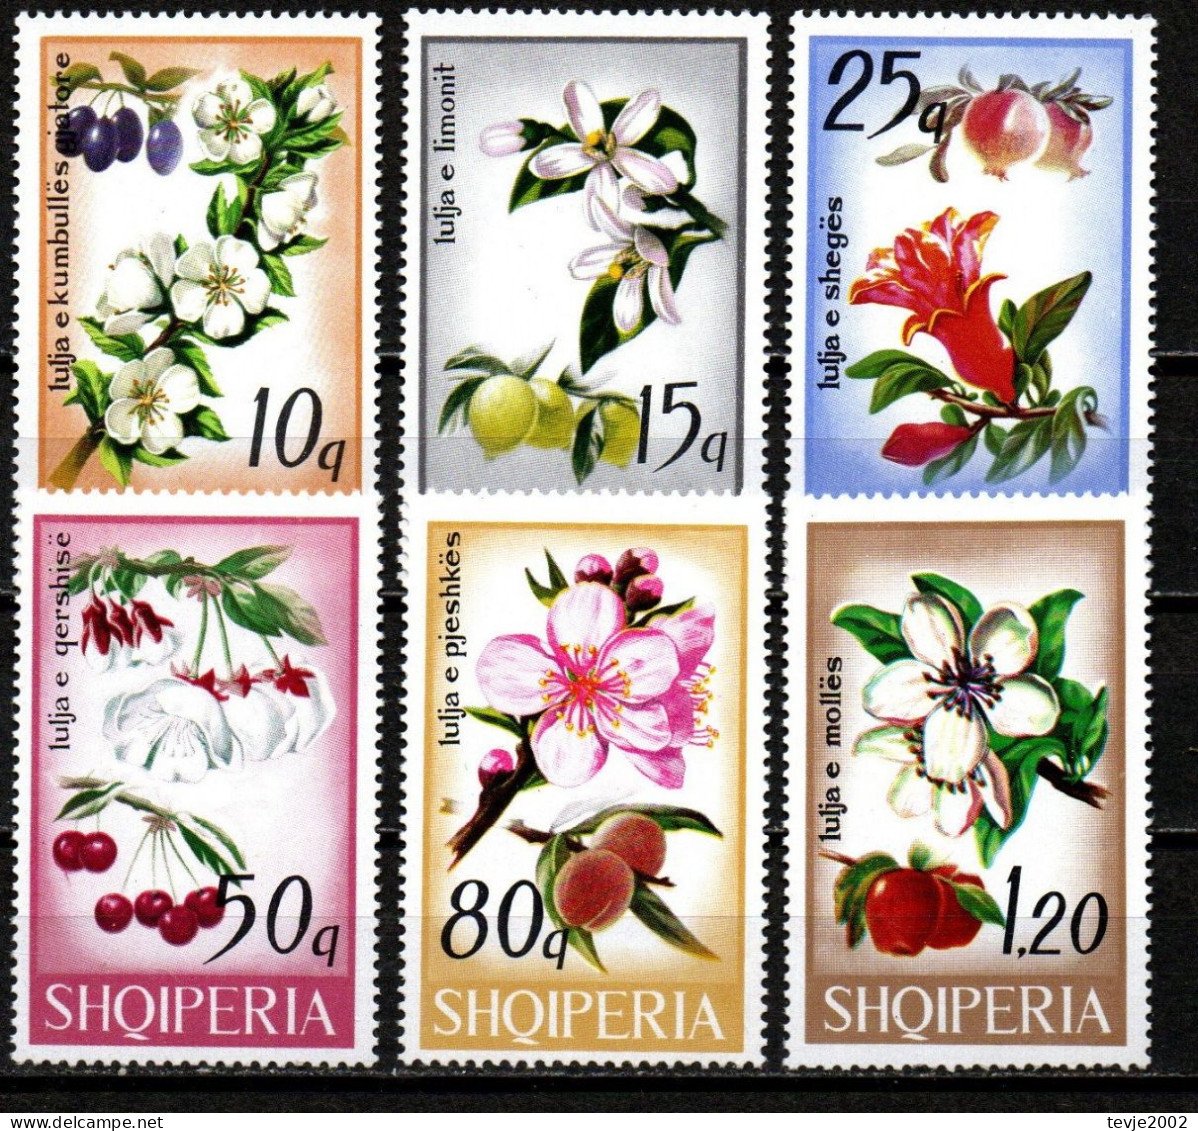 Albanien 1969 - Mi.Nr. 1362 - 1367 - Postfrisch MNH - Pflanzen Plants Obst Fruits - Fruit